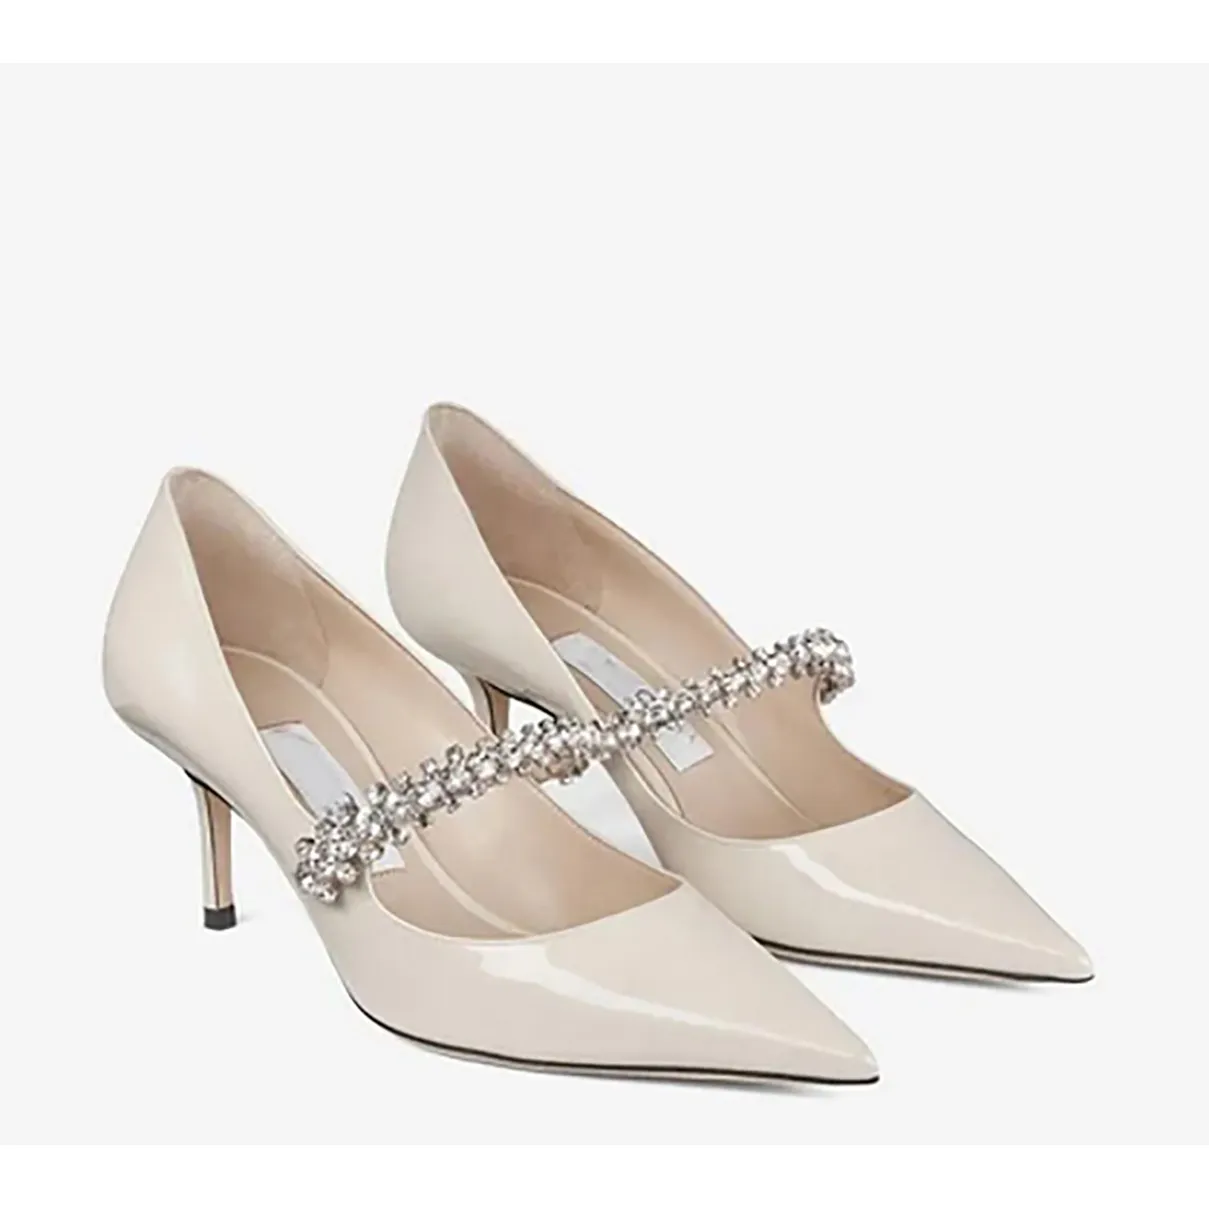 Marca de luxo sapatos femininos formal bing bomba patenteada em couro pontual ribbon designer de saltos altos femininos feitos na Itália, tamanhos 35-42 com caixa